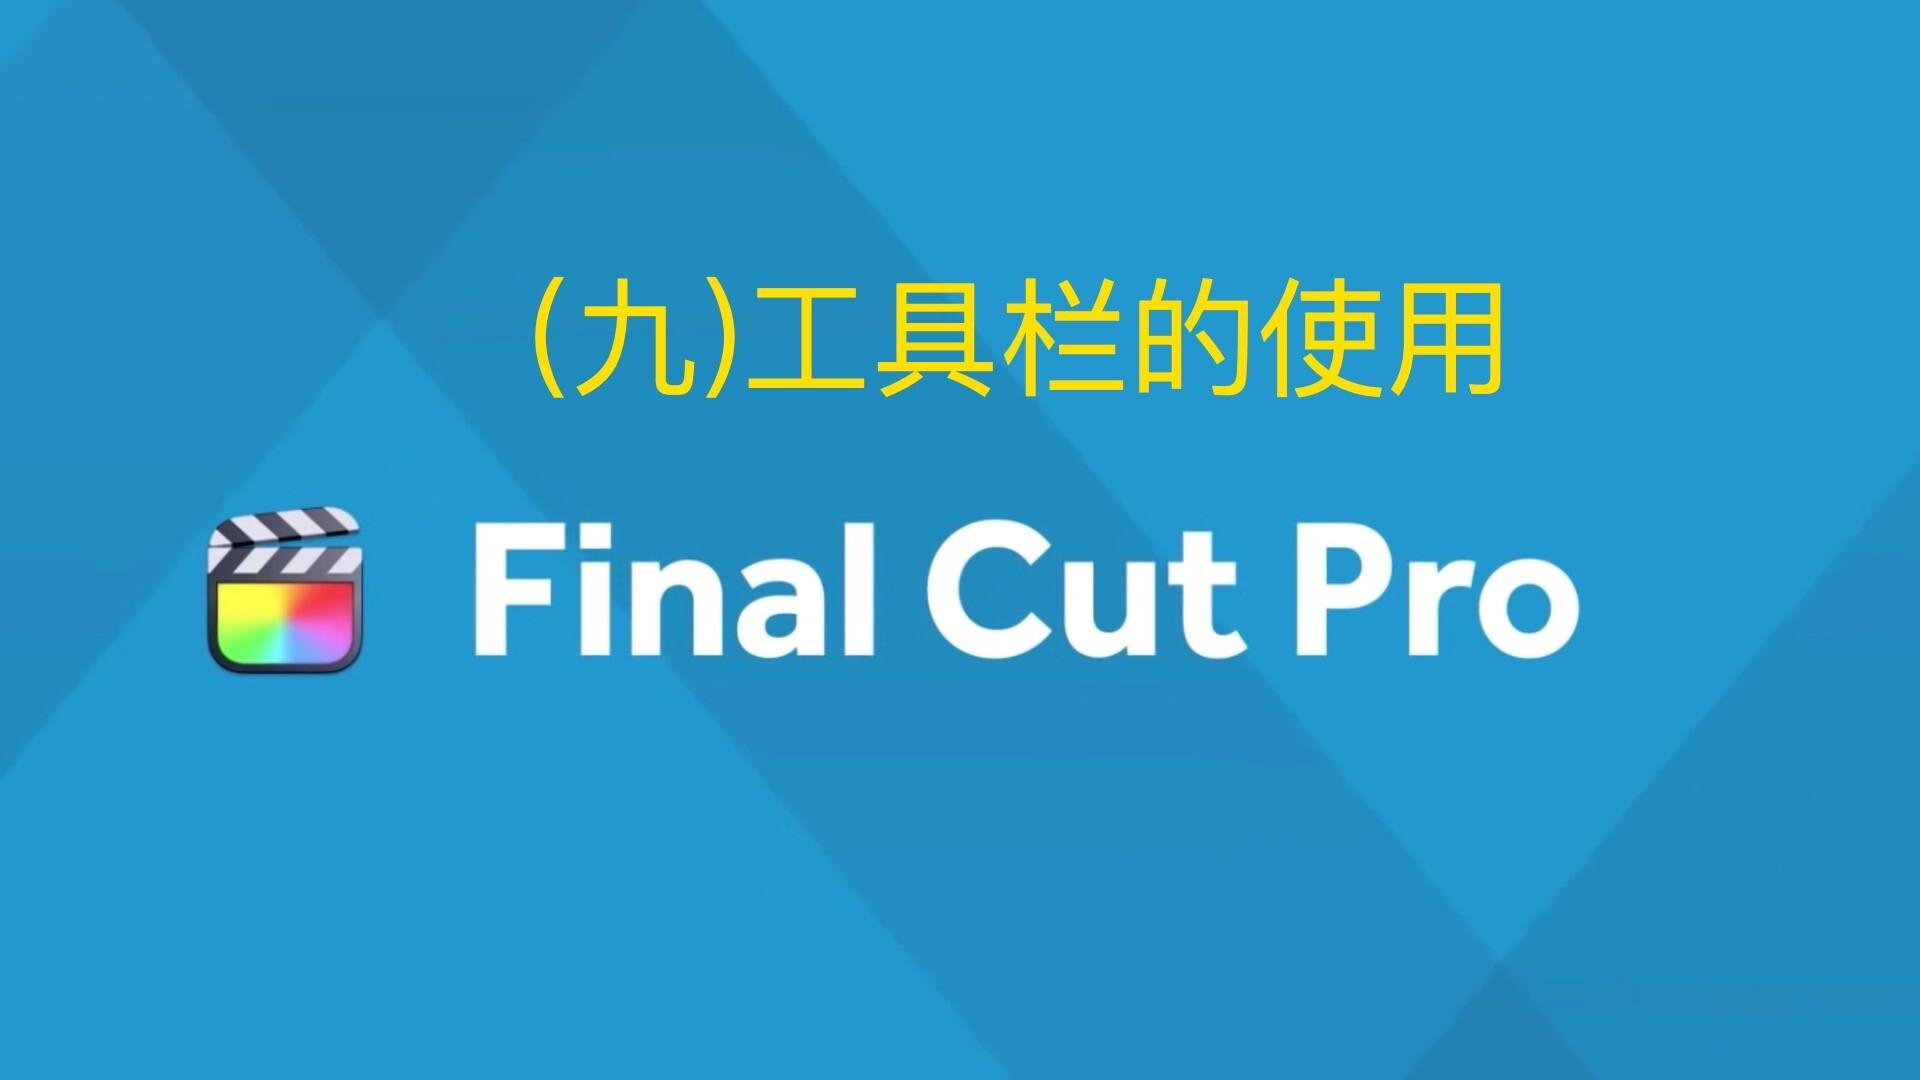 Final Cut Pro中文新手教程 (9) 工具栏的使用